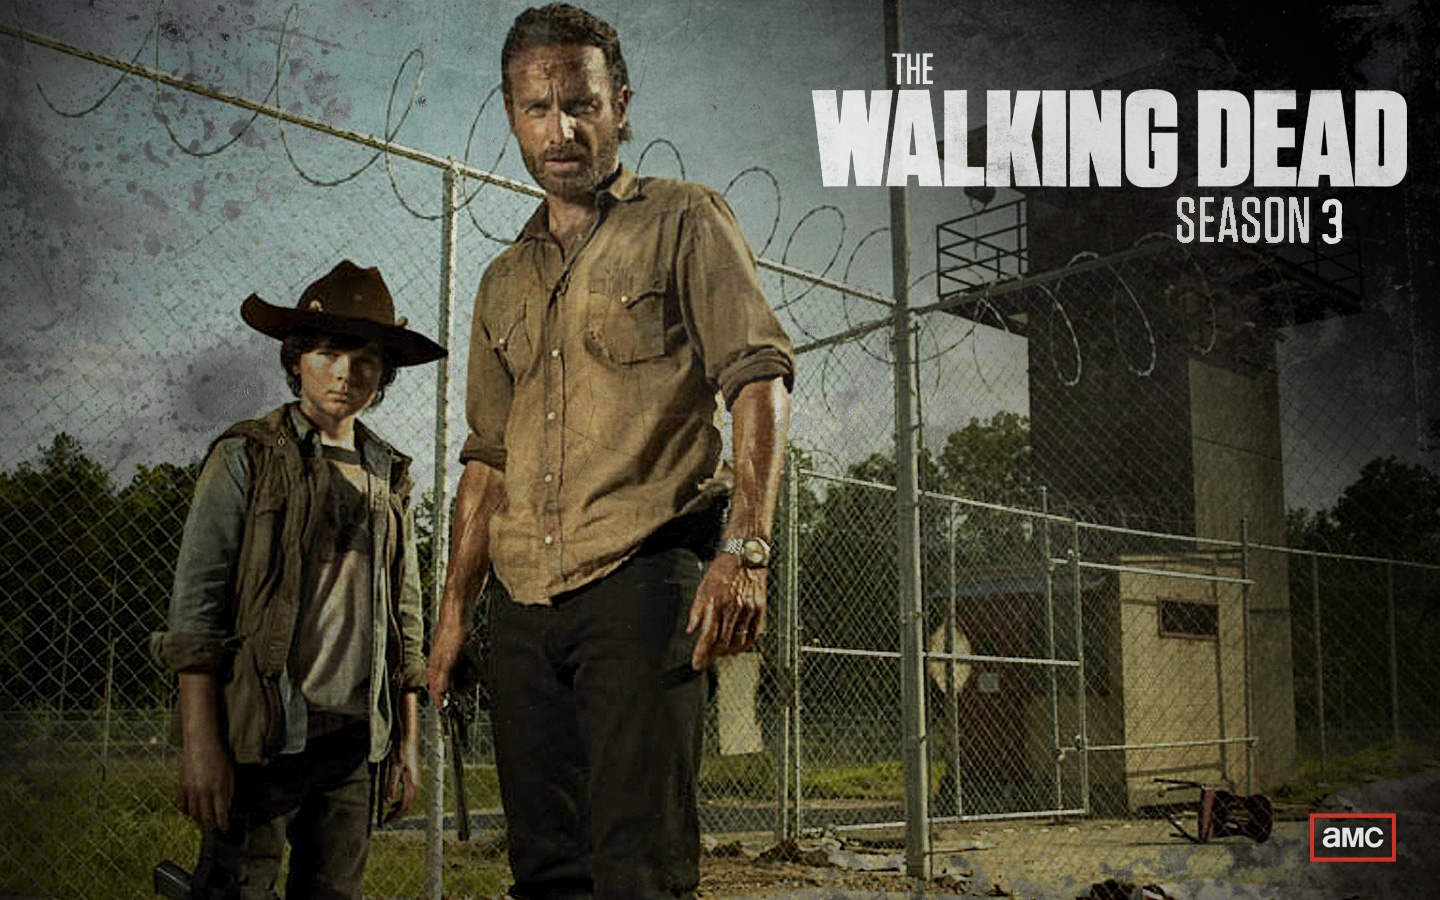 The Walking Dead (season 3) - Wikipedia